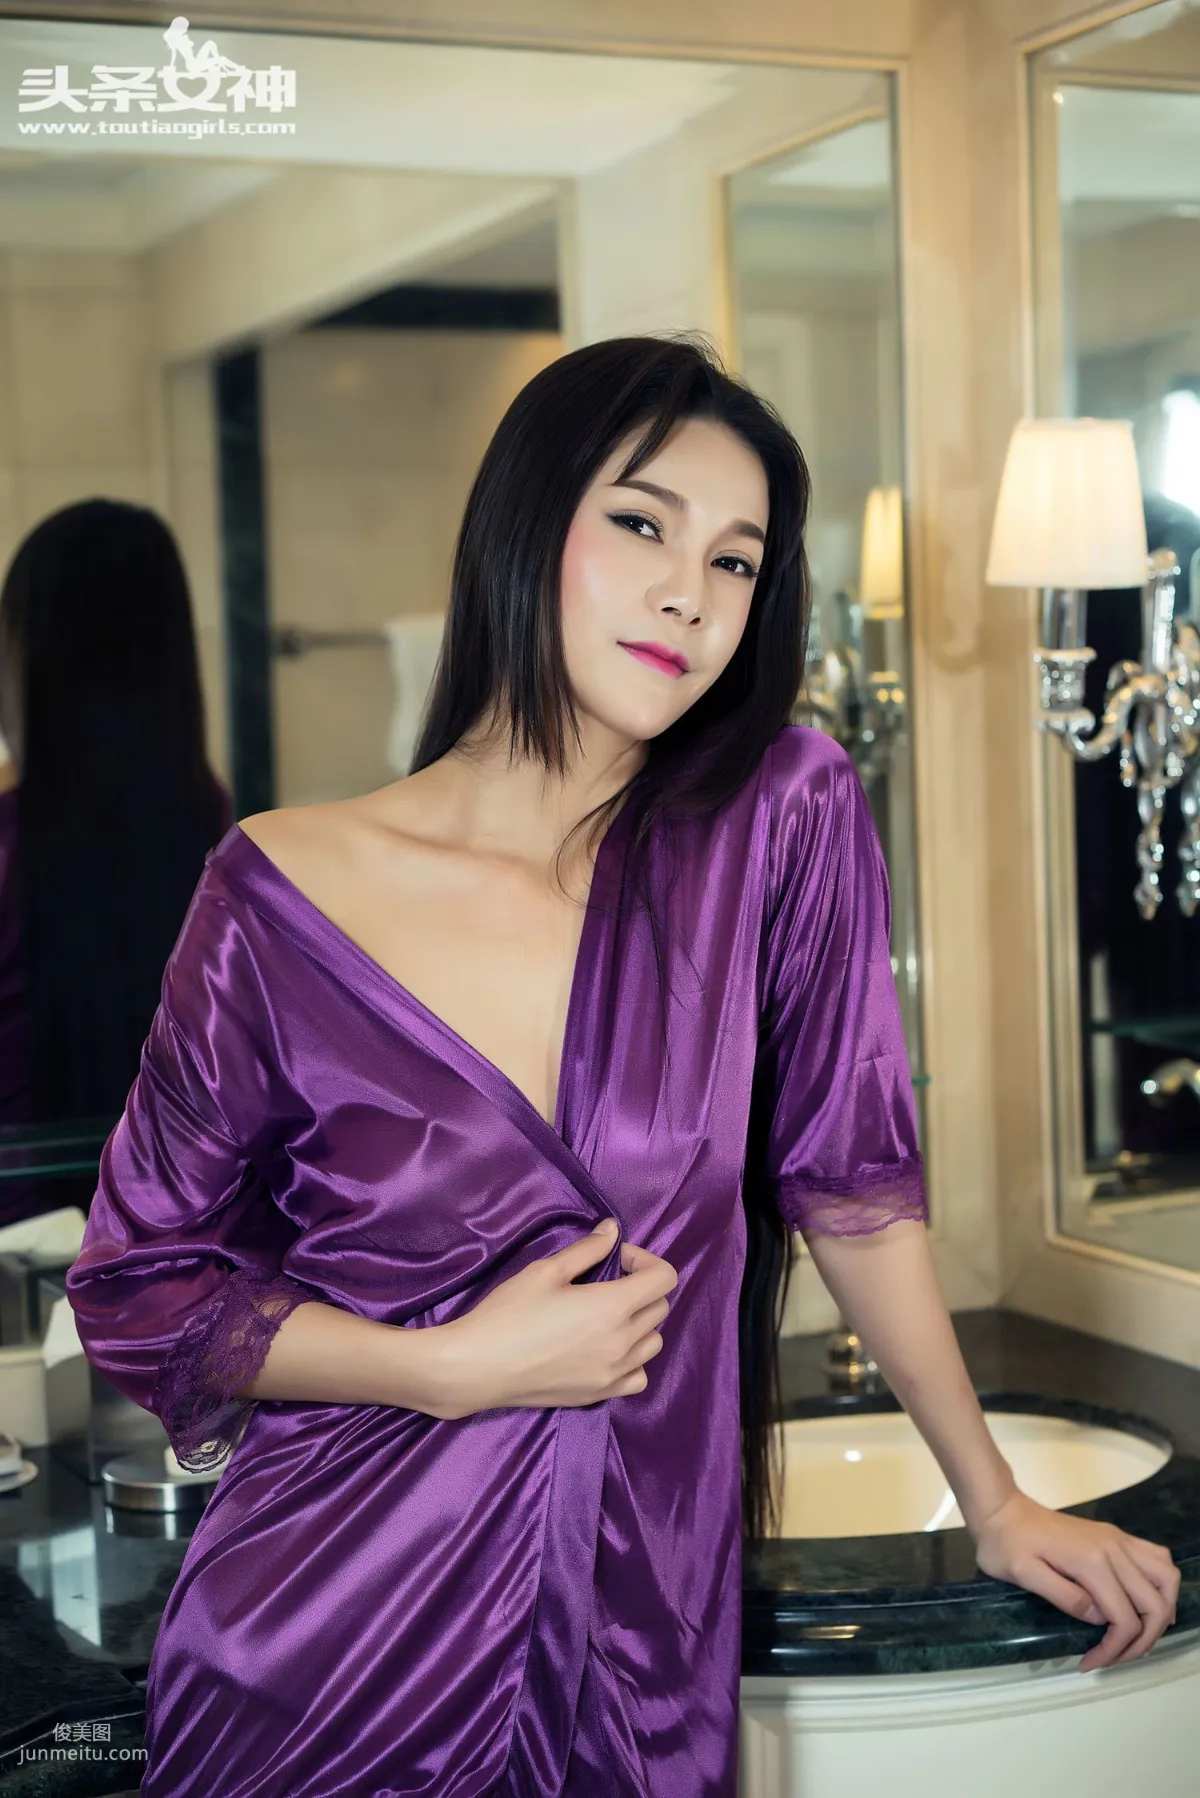 刘雨露《紫色浴袍的百分百加成》 [头条女神] 写真集25